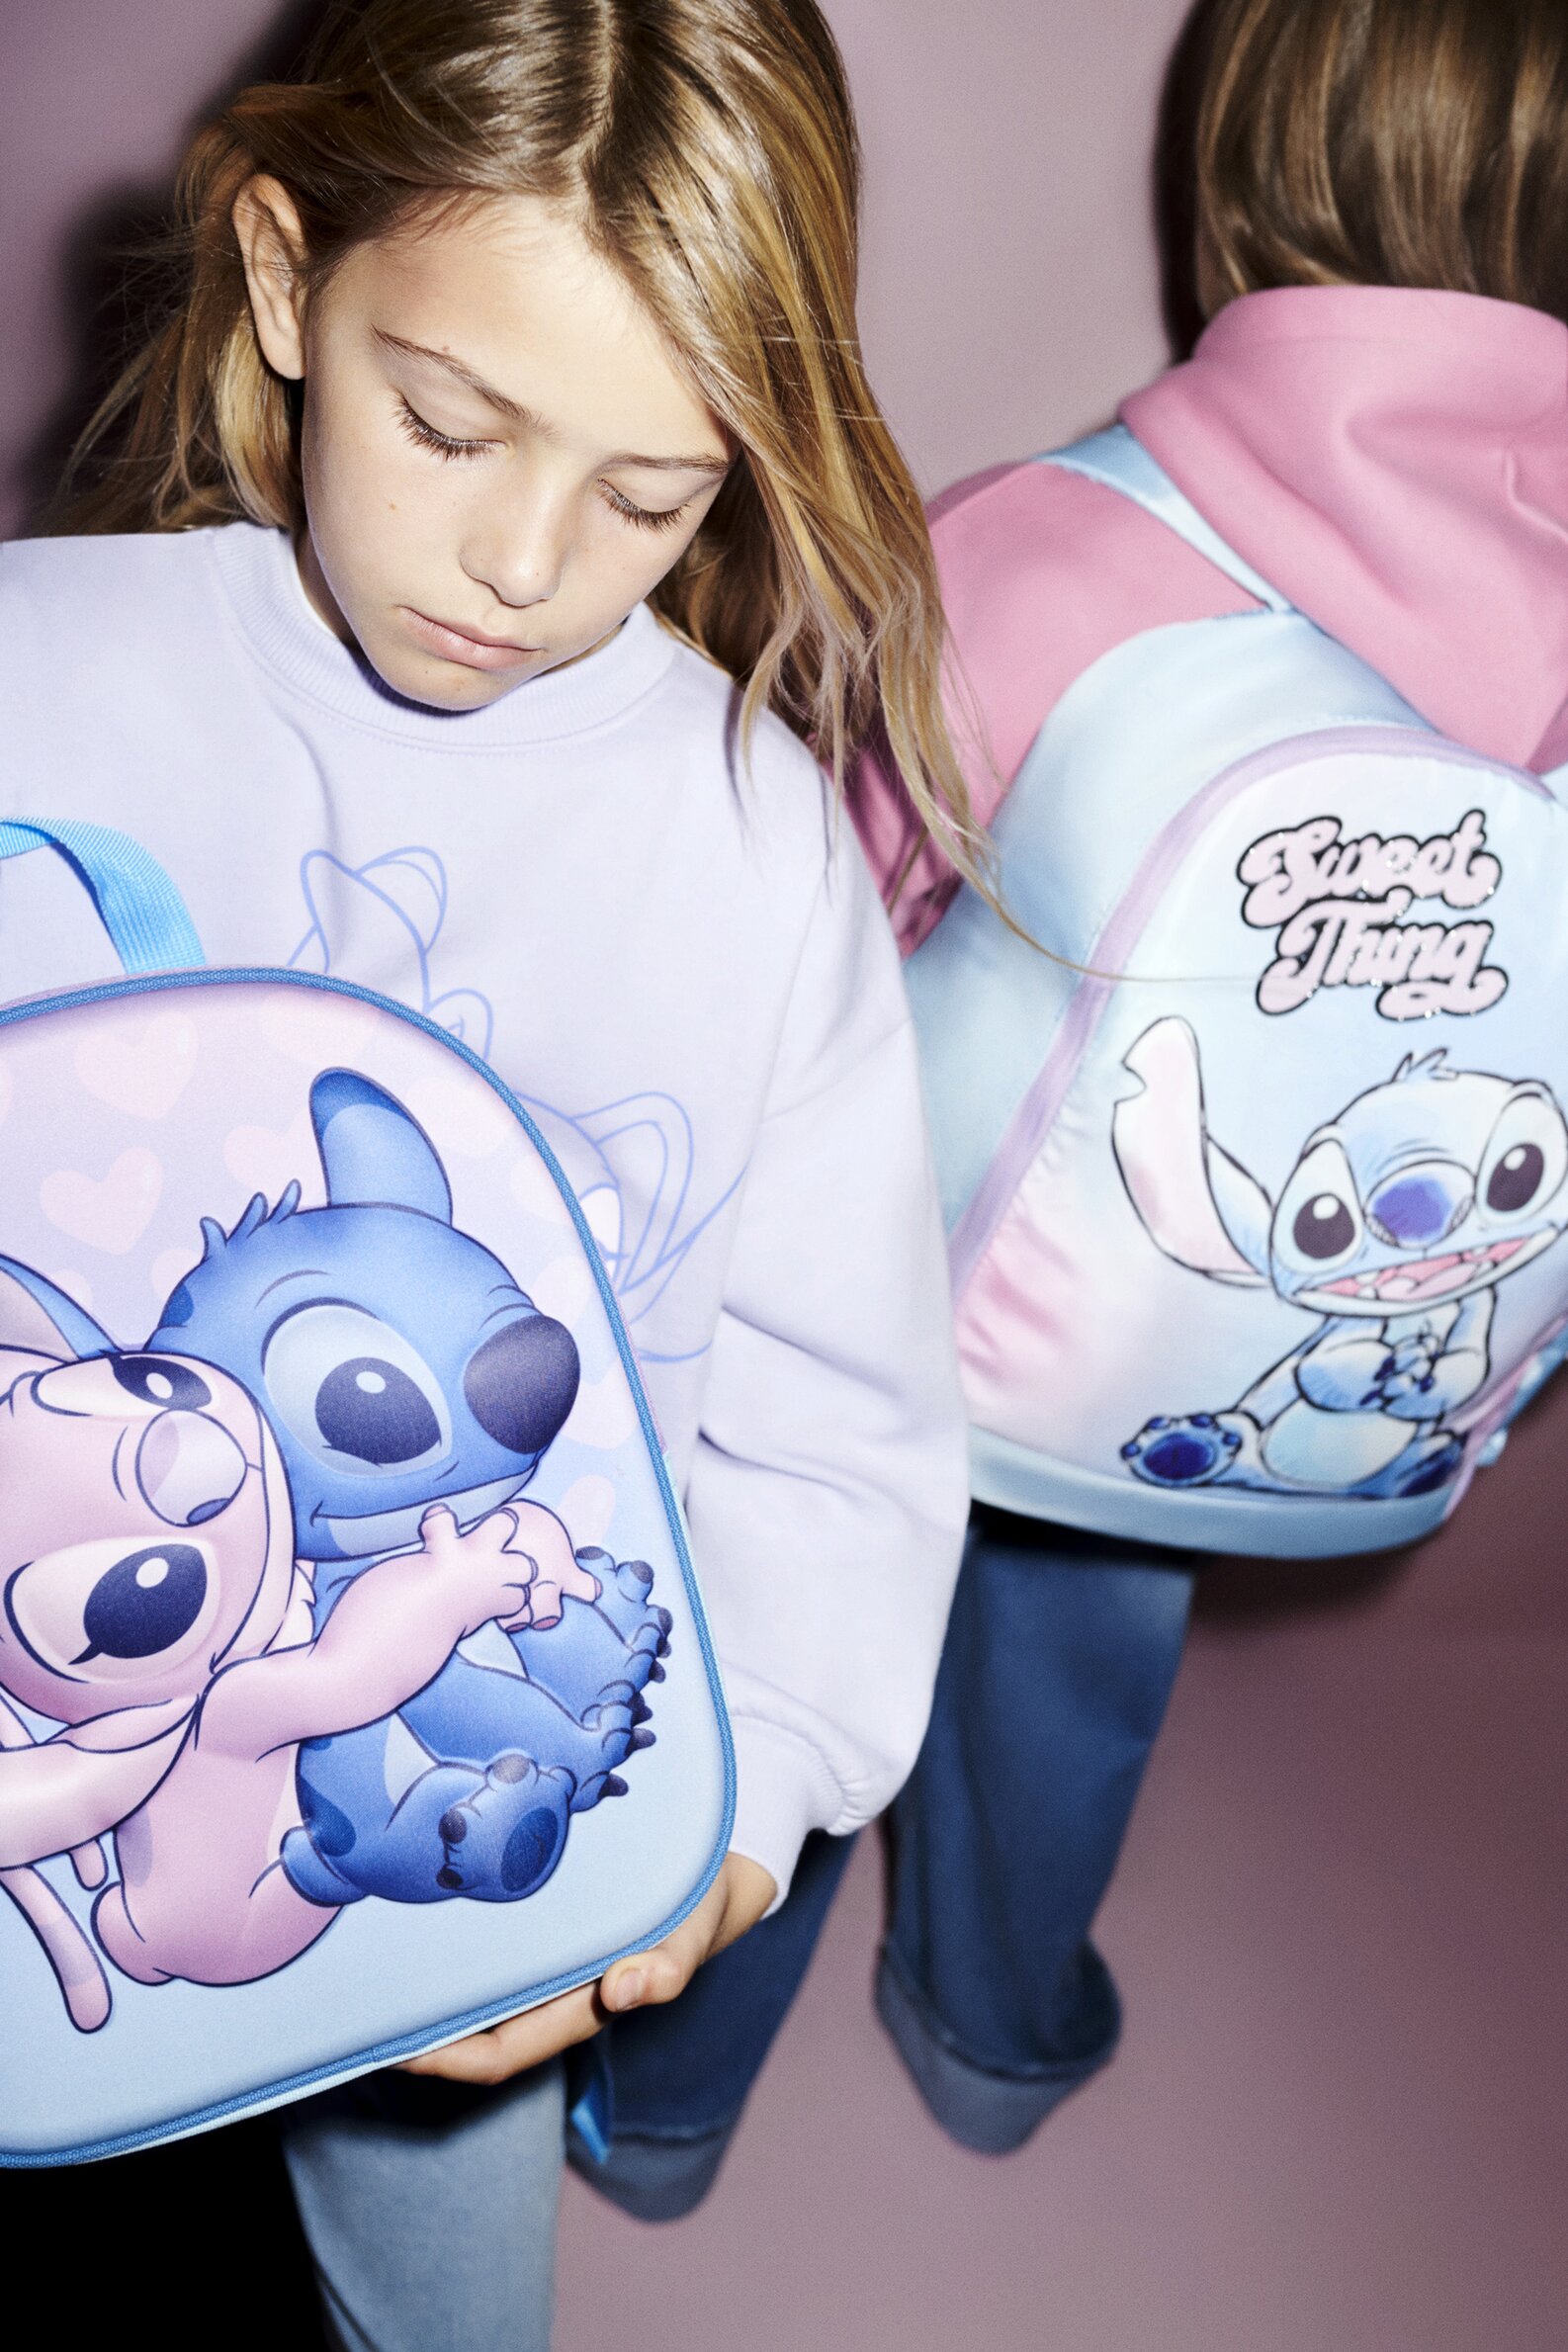 Lilo & Stitch-Disfraz de Disney para niñas, ropa nueva para